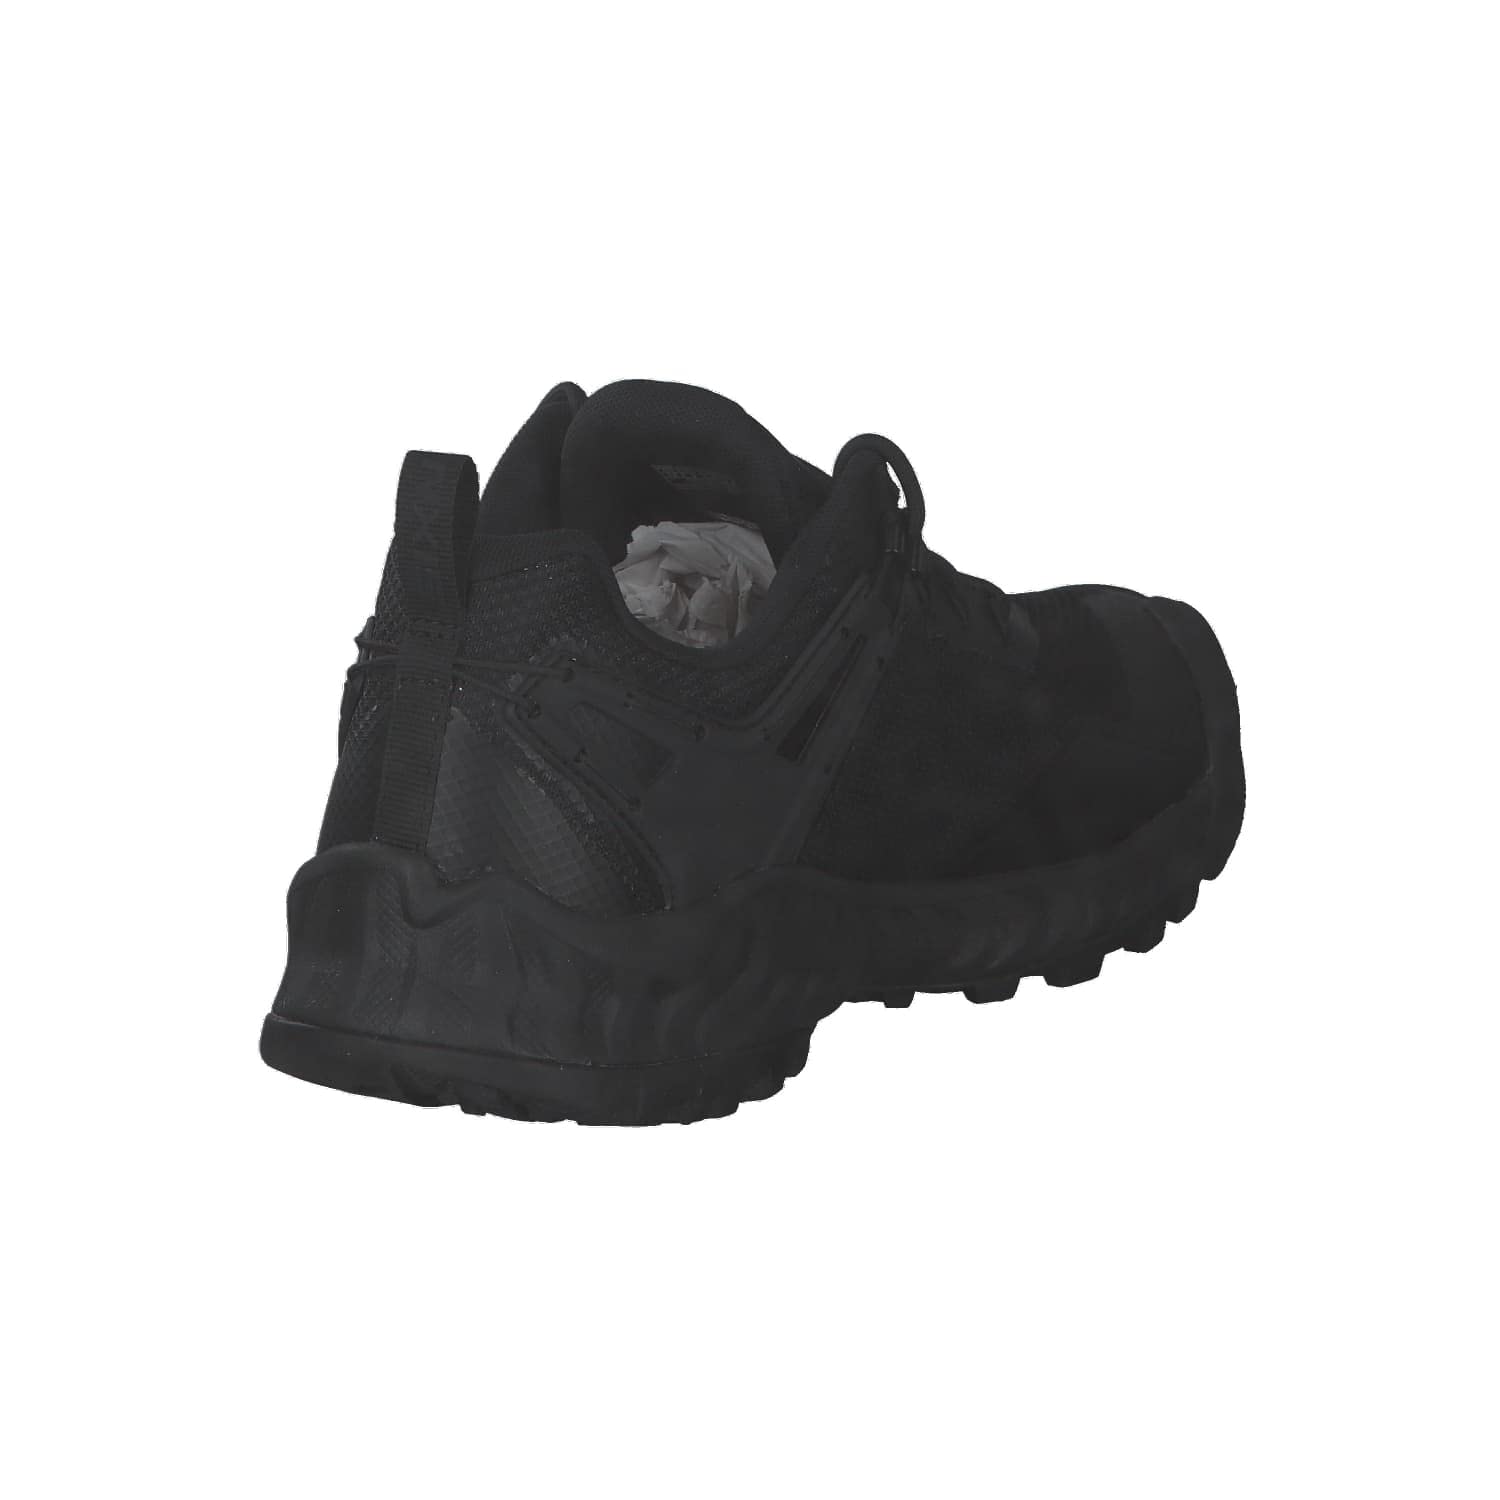 KEEN Men's Nxis Evo Low Height Waterproof Hiking Shoes